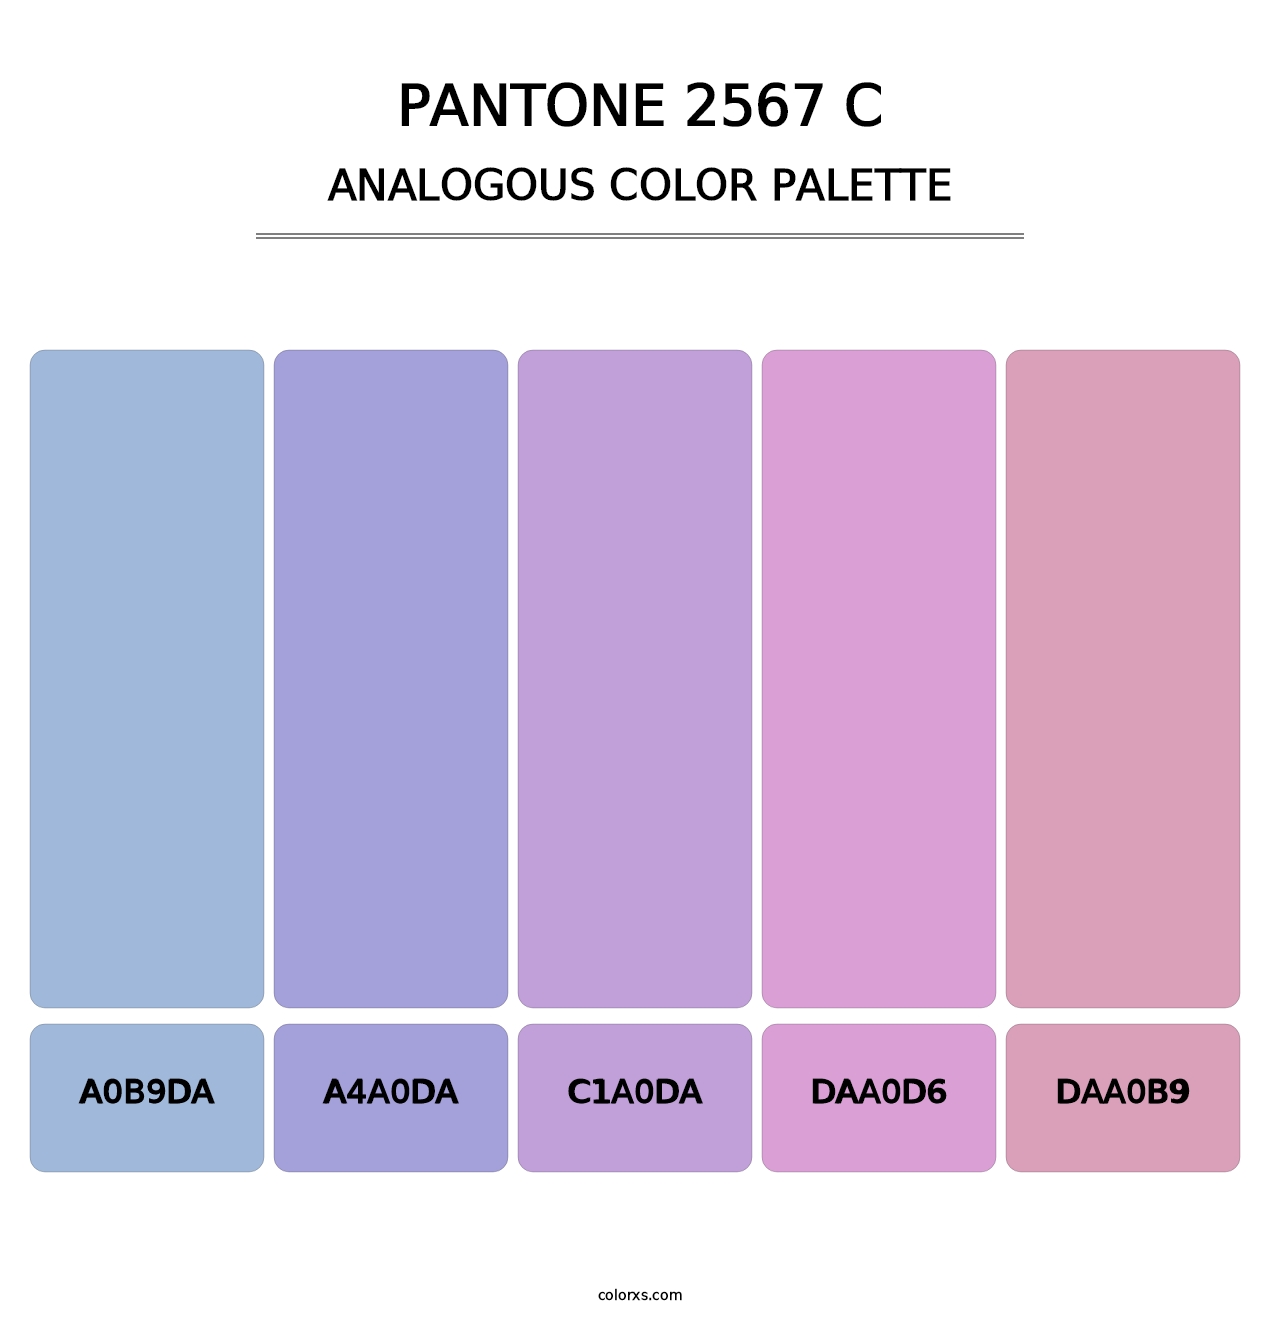 PANTONE 2567 C - Analogous Color Palette